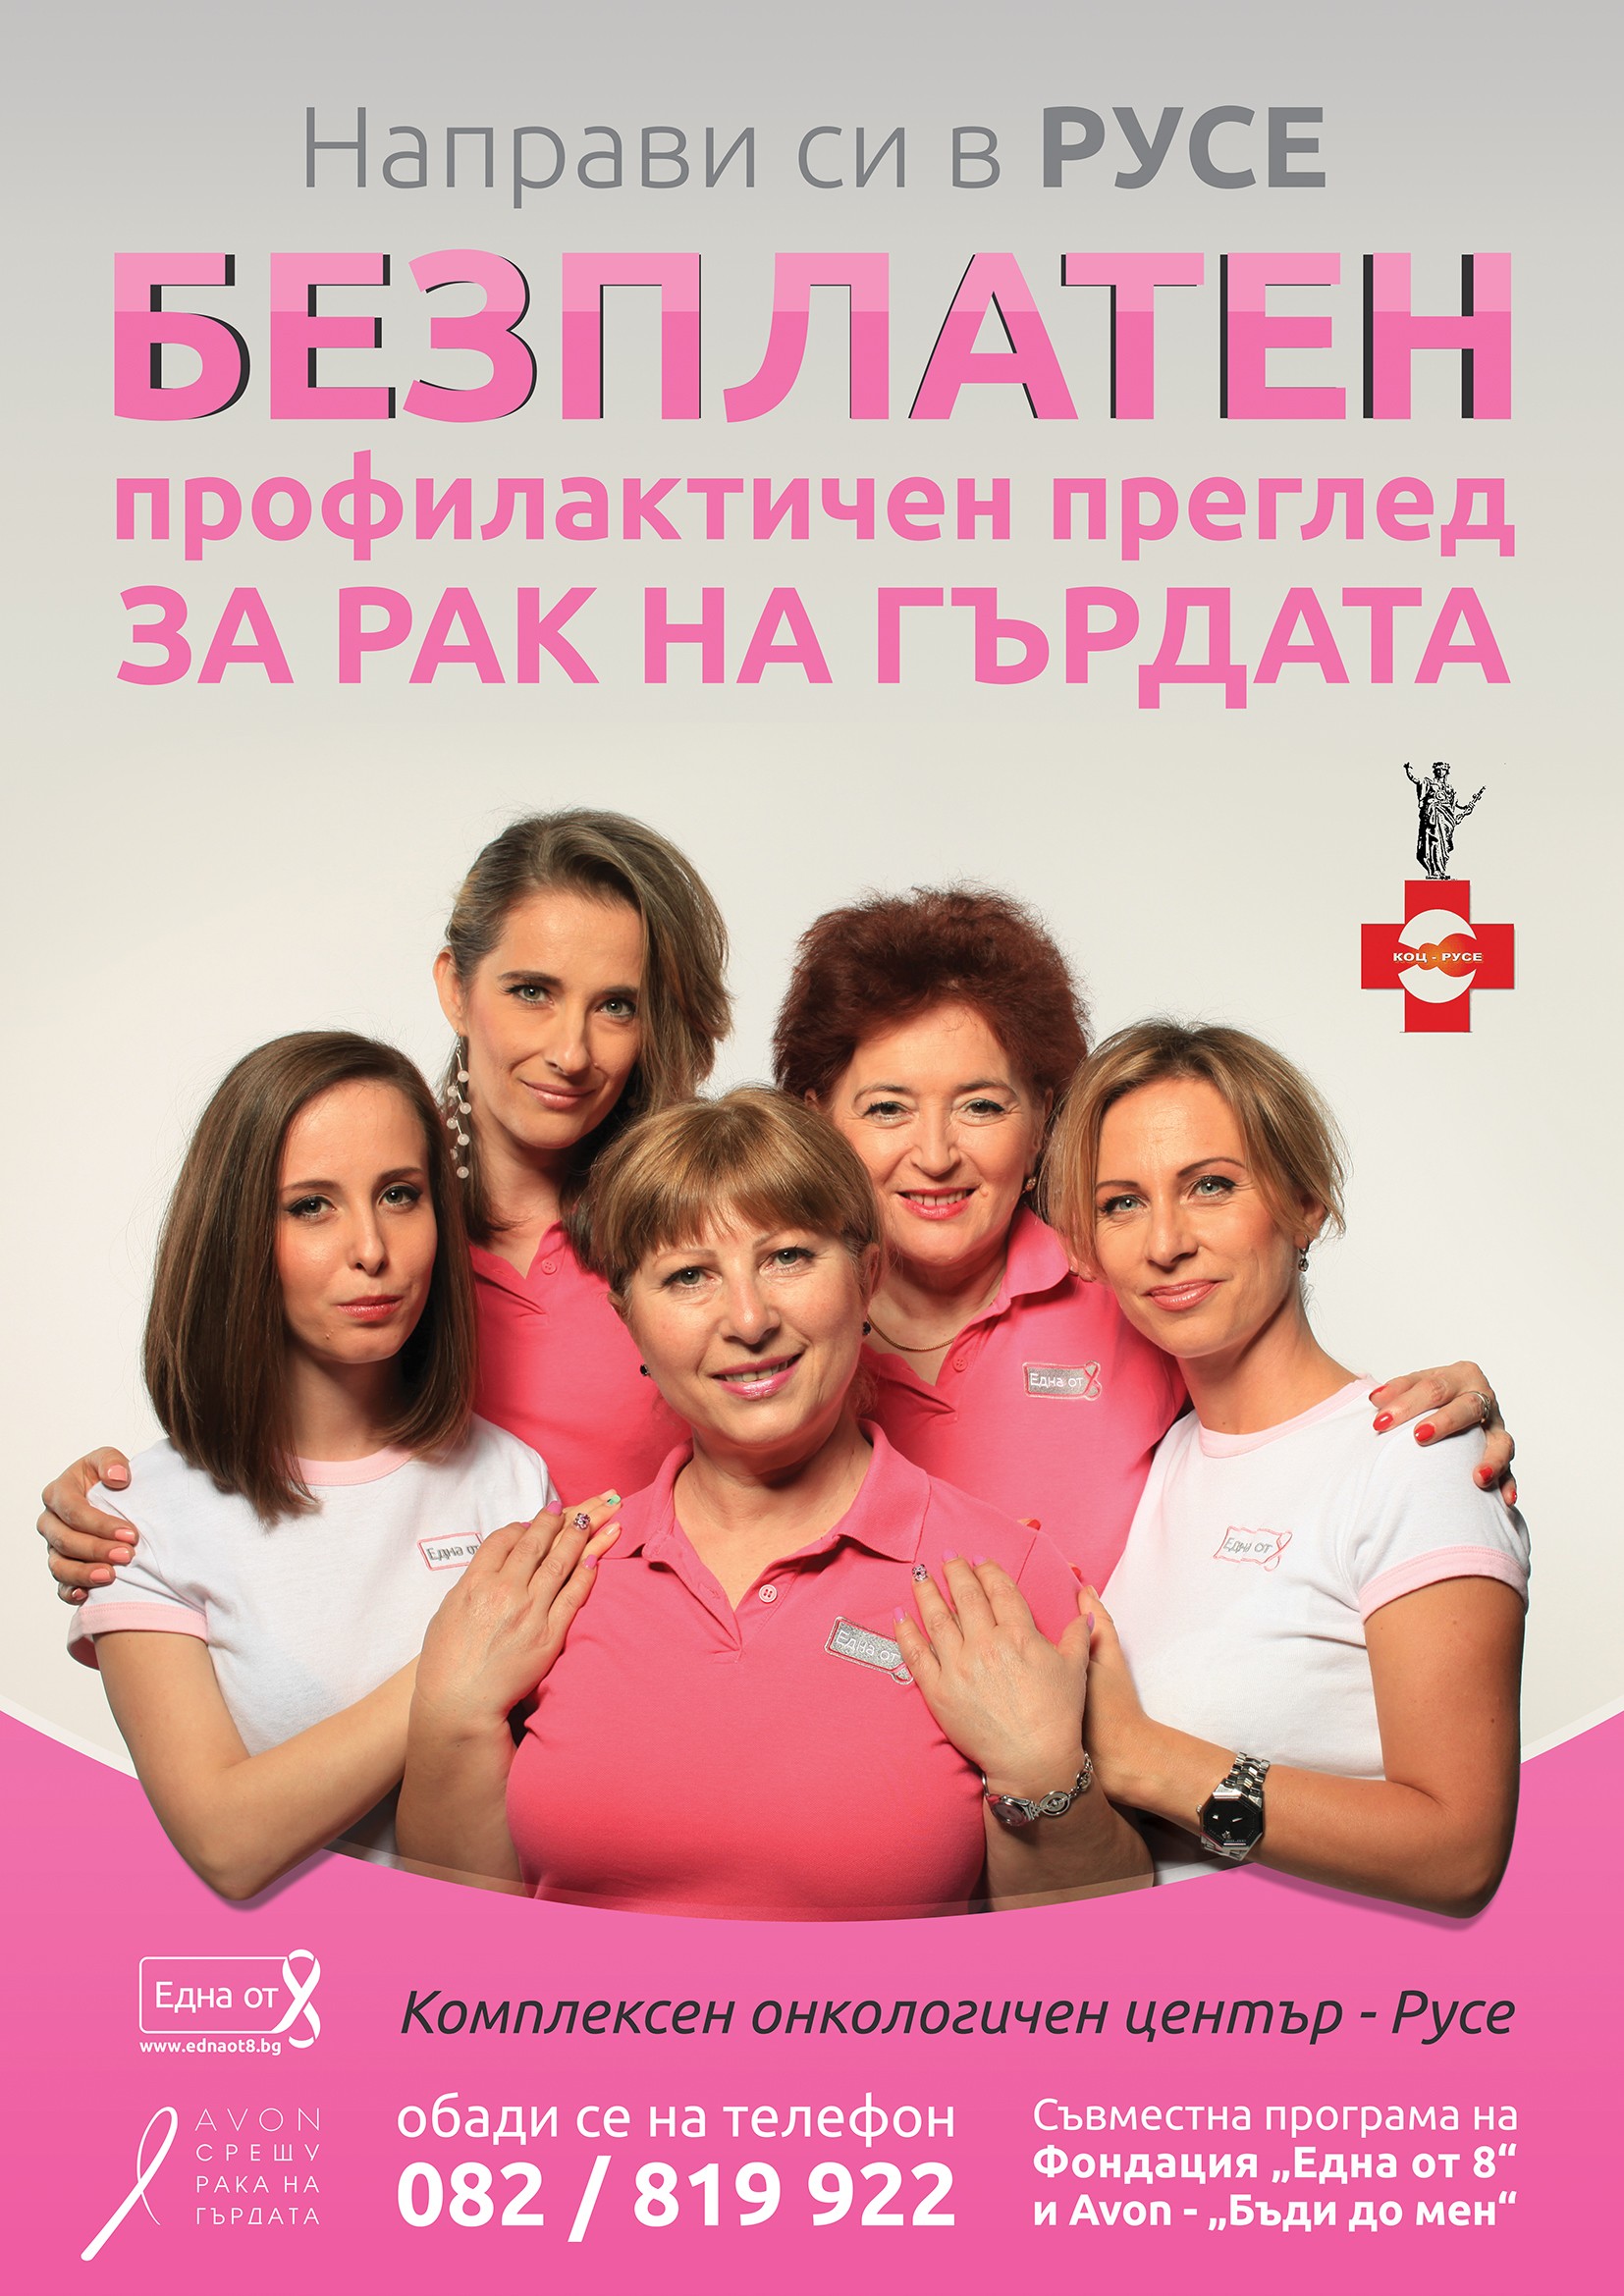 Запишете си безплатен профилактичен преглед за рак на гърдата в град Русе!